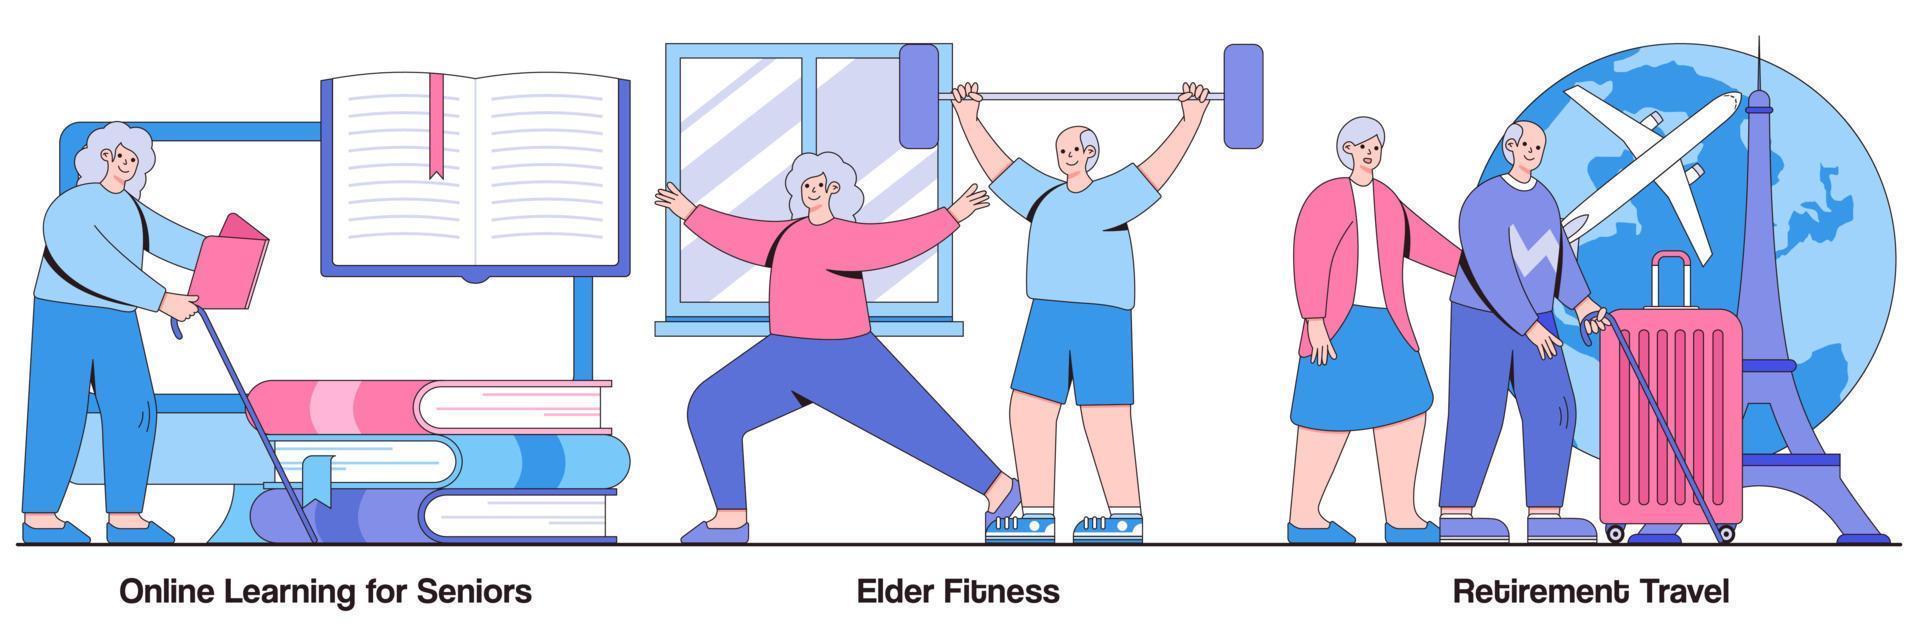 aprendizaje en línea para personas mayores, fitness para personas mayores, viajes de jubilación con paquete de ilustraciones de personajes de personas vector